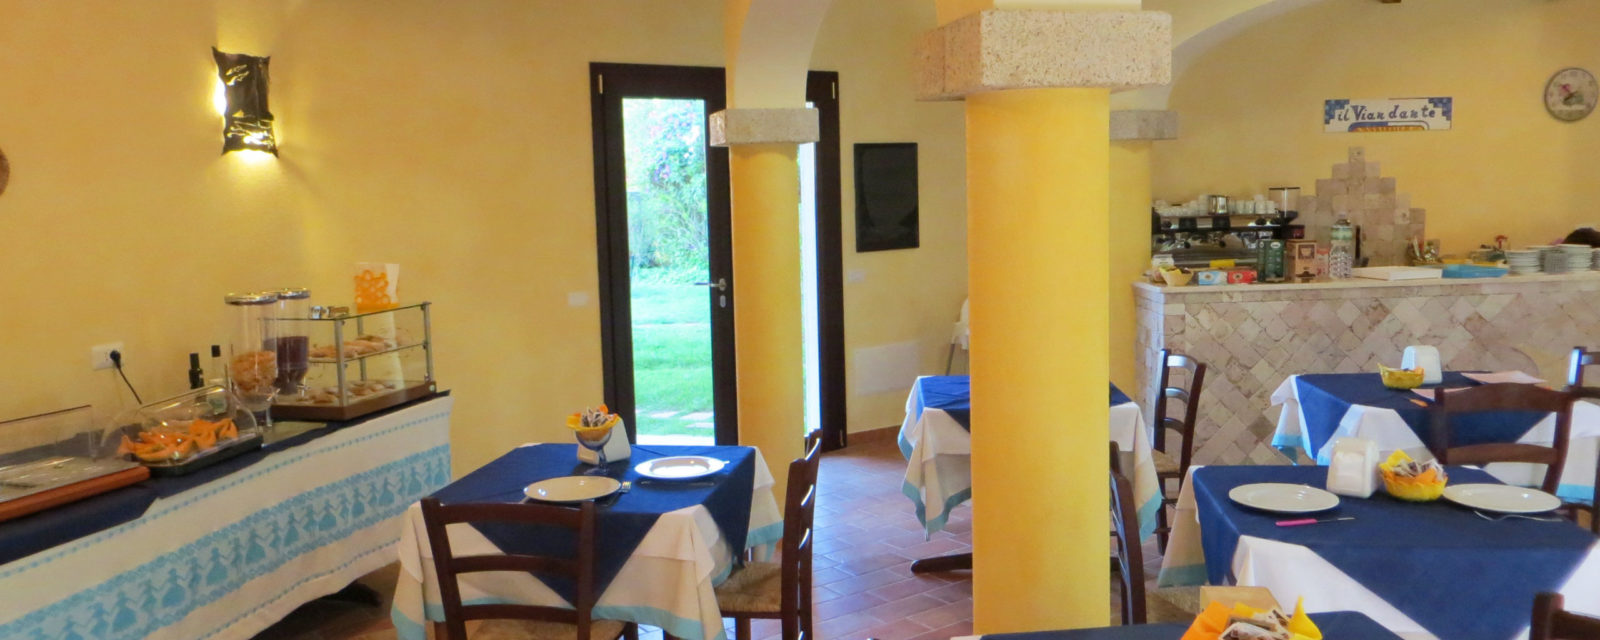 La sala delle colazioni dell'Hotel a San Teodoro Sardegna